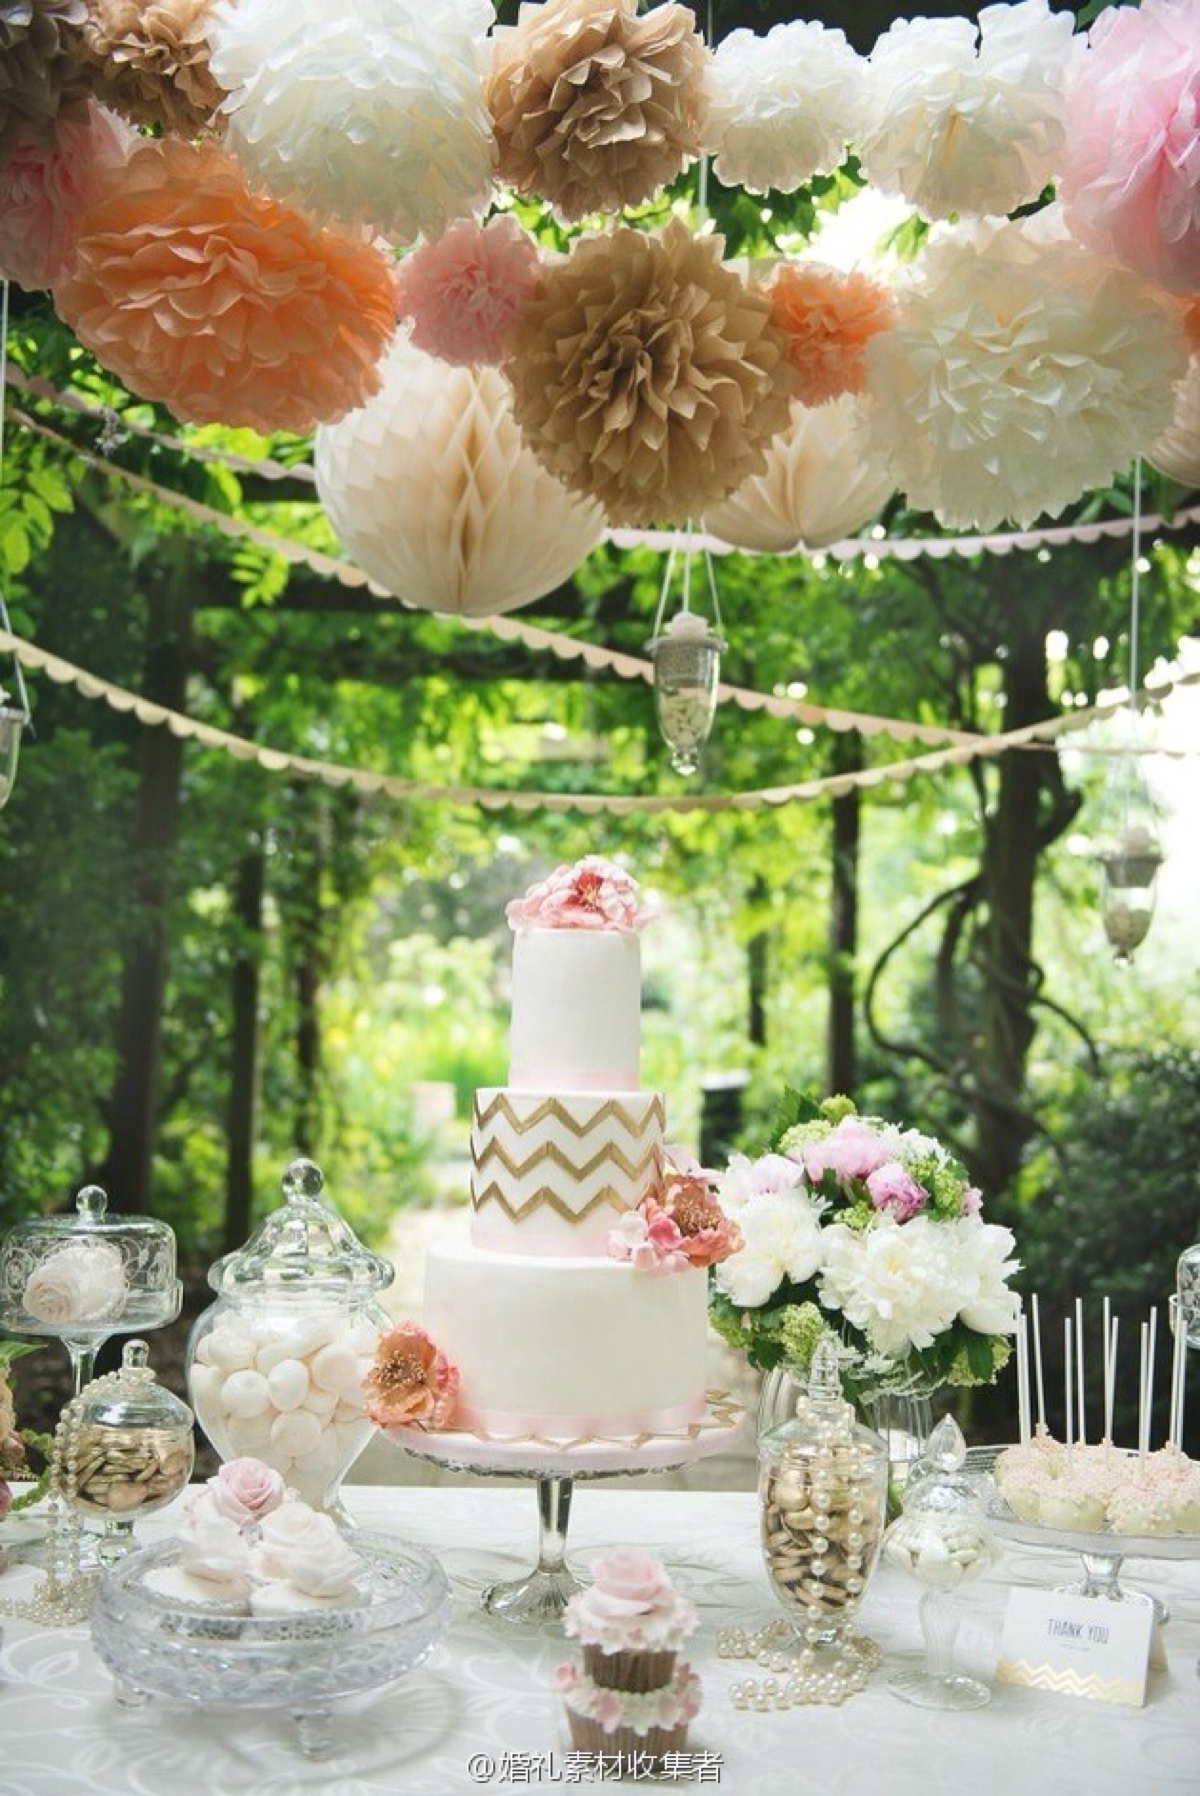 翻糖 婚礼 鲜花 蛋糕 甜点 甜品台